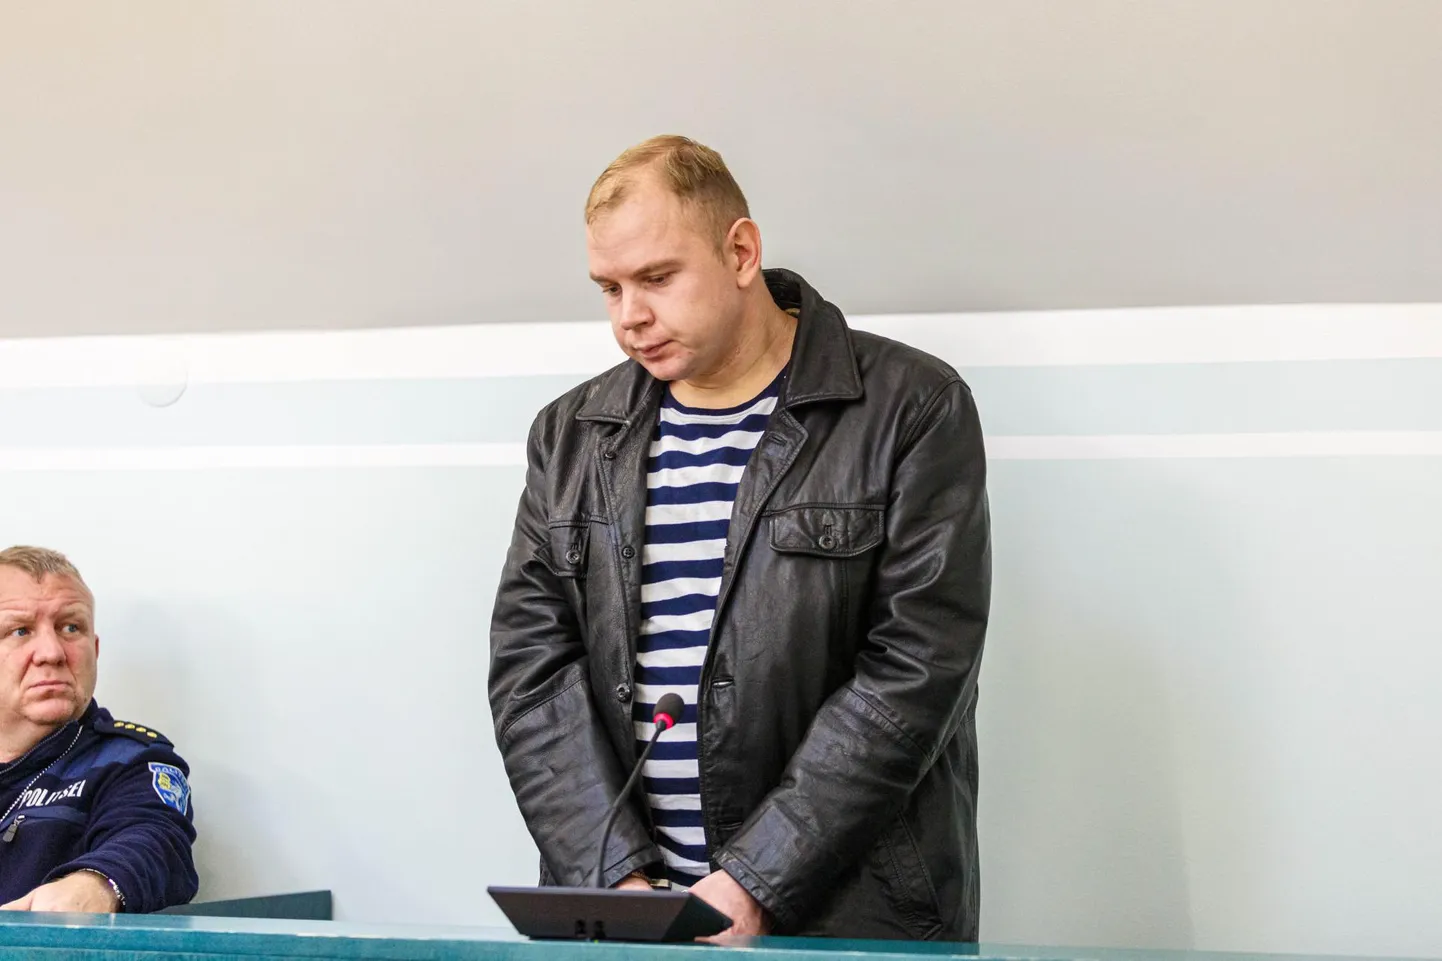 Kirju minevikuga Markko Targamaal on veel kandmata karistus, mis talle Võru kohtumajas 2019. aasta oktoobris poeröövi eest mõisteti. Nüüd on mees taas sekeldustes.